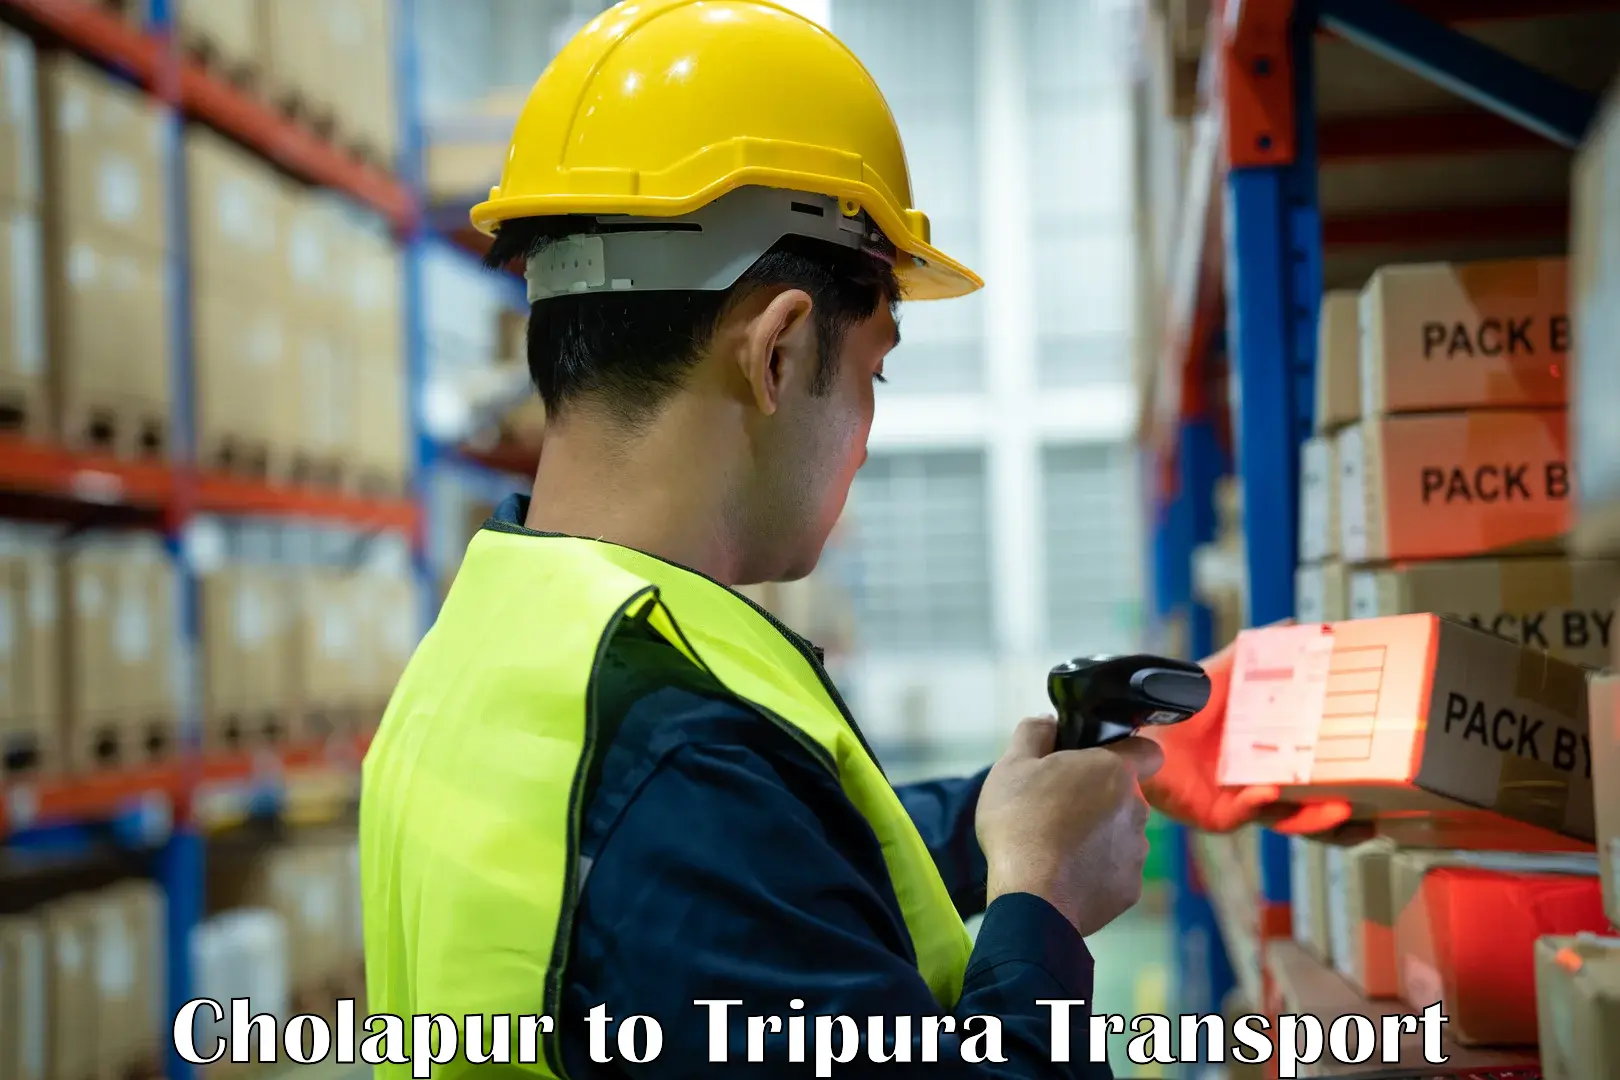 Air cargo transport services Cholapur to Tripura